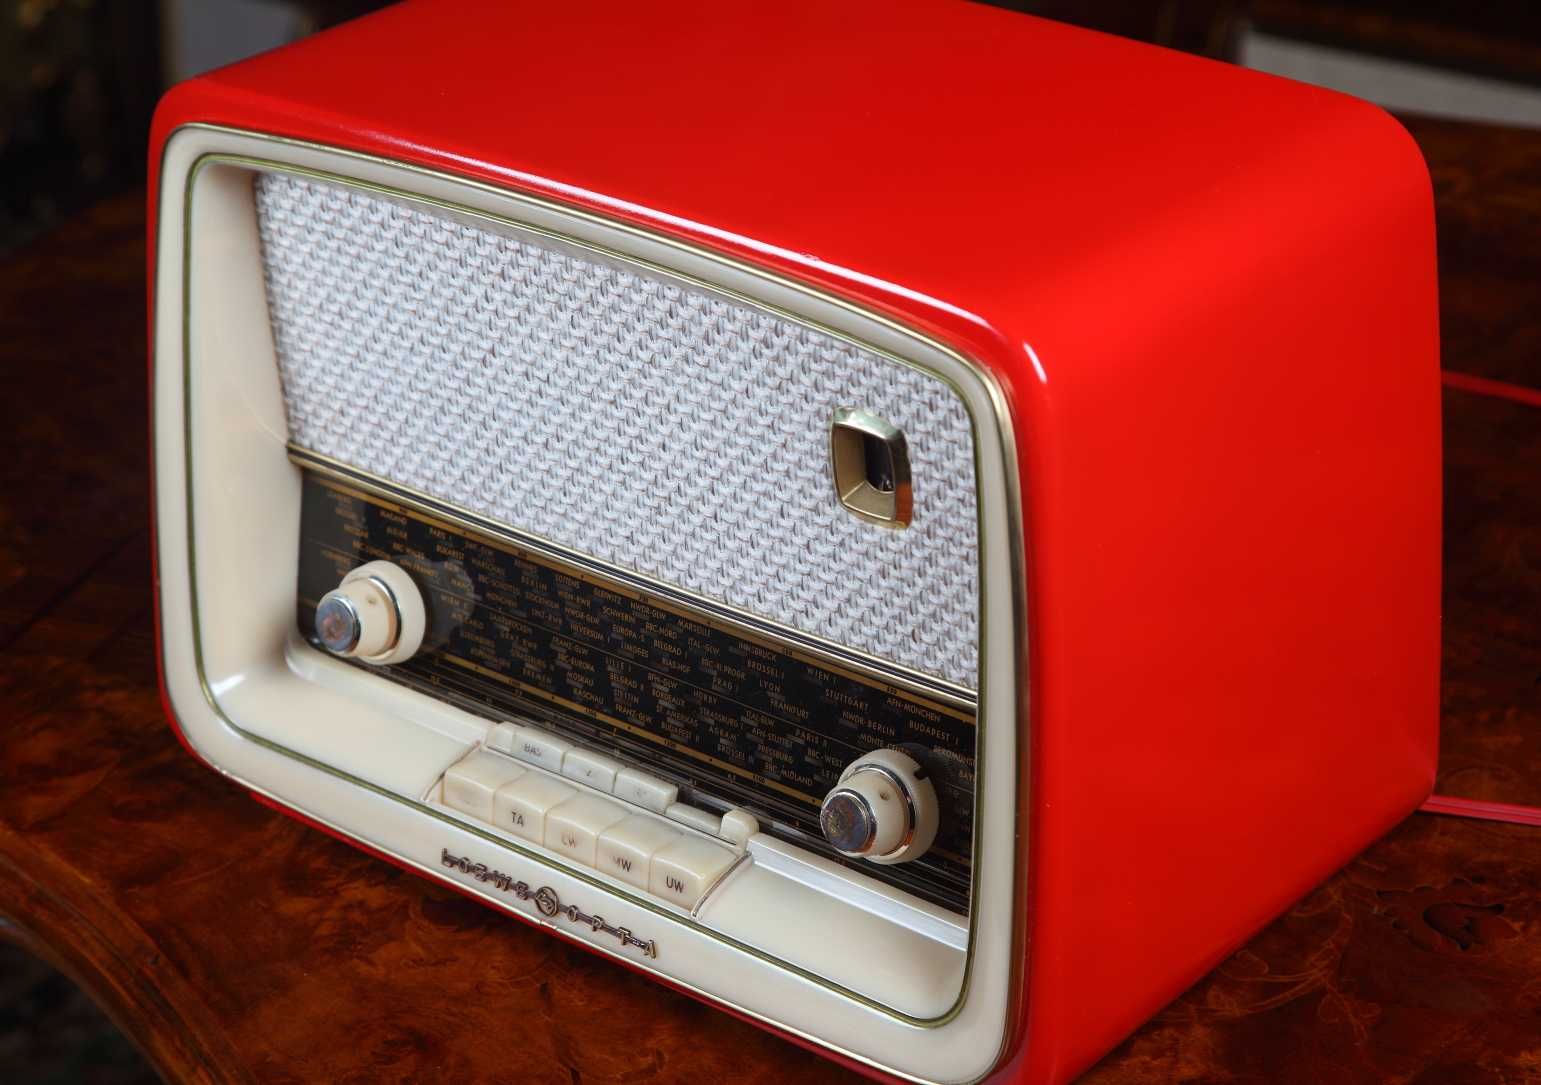 Vand radio pe lampi Loewe Opta Bella Luxus 2711W, complet restaurat